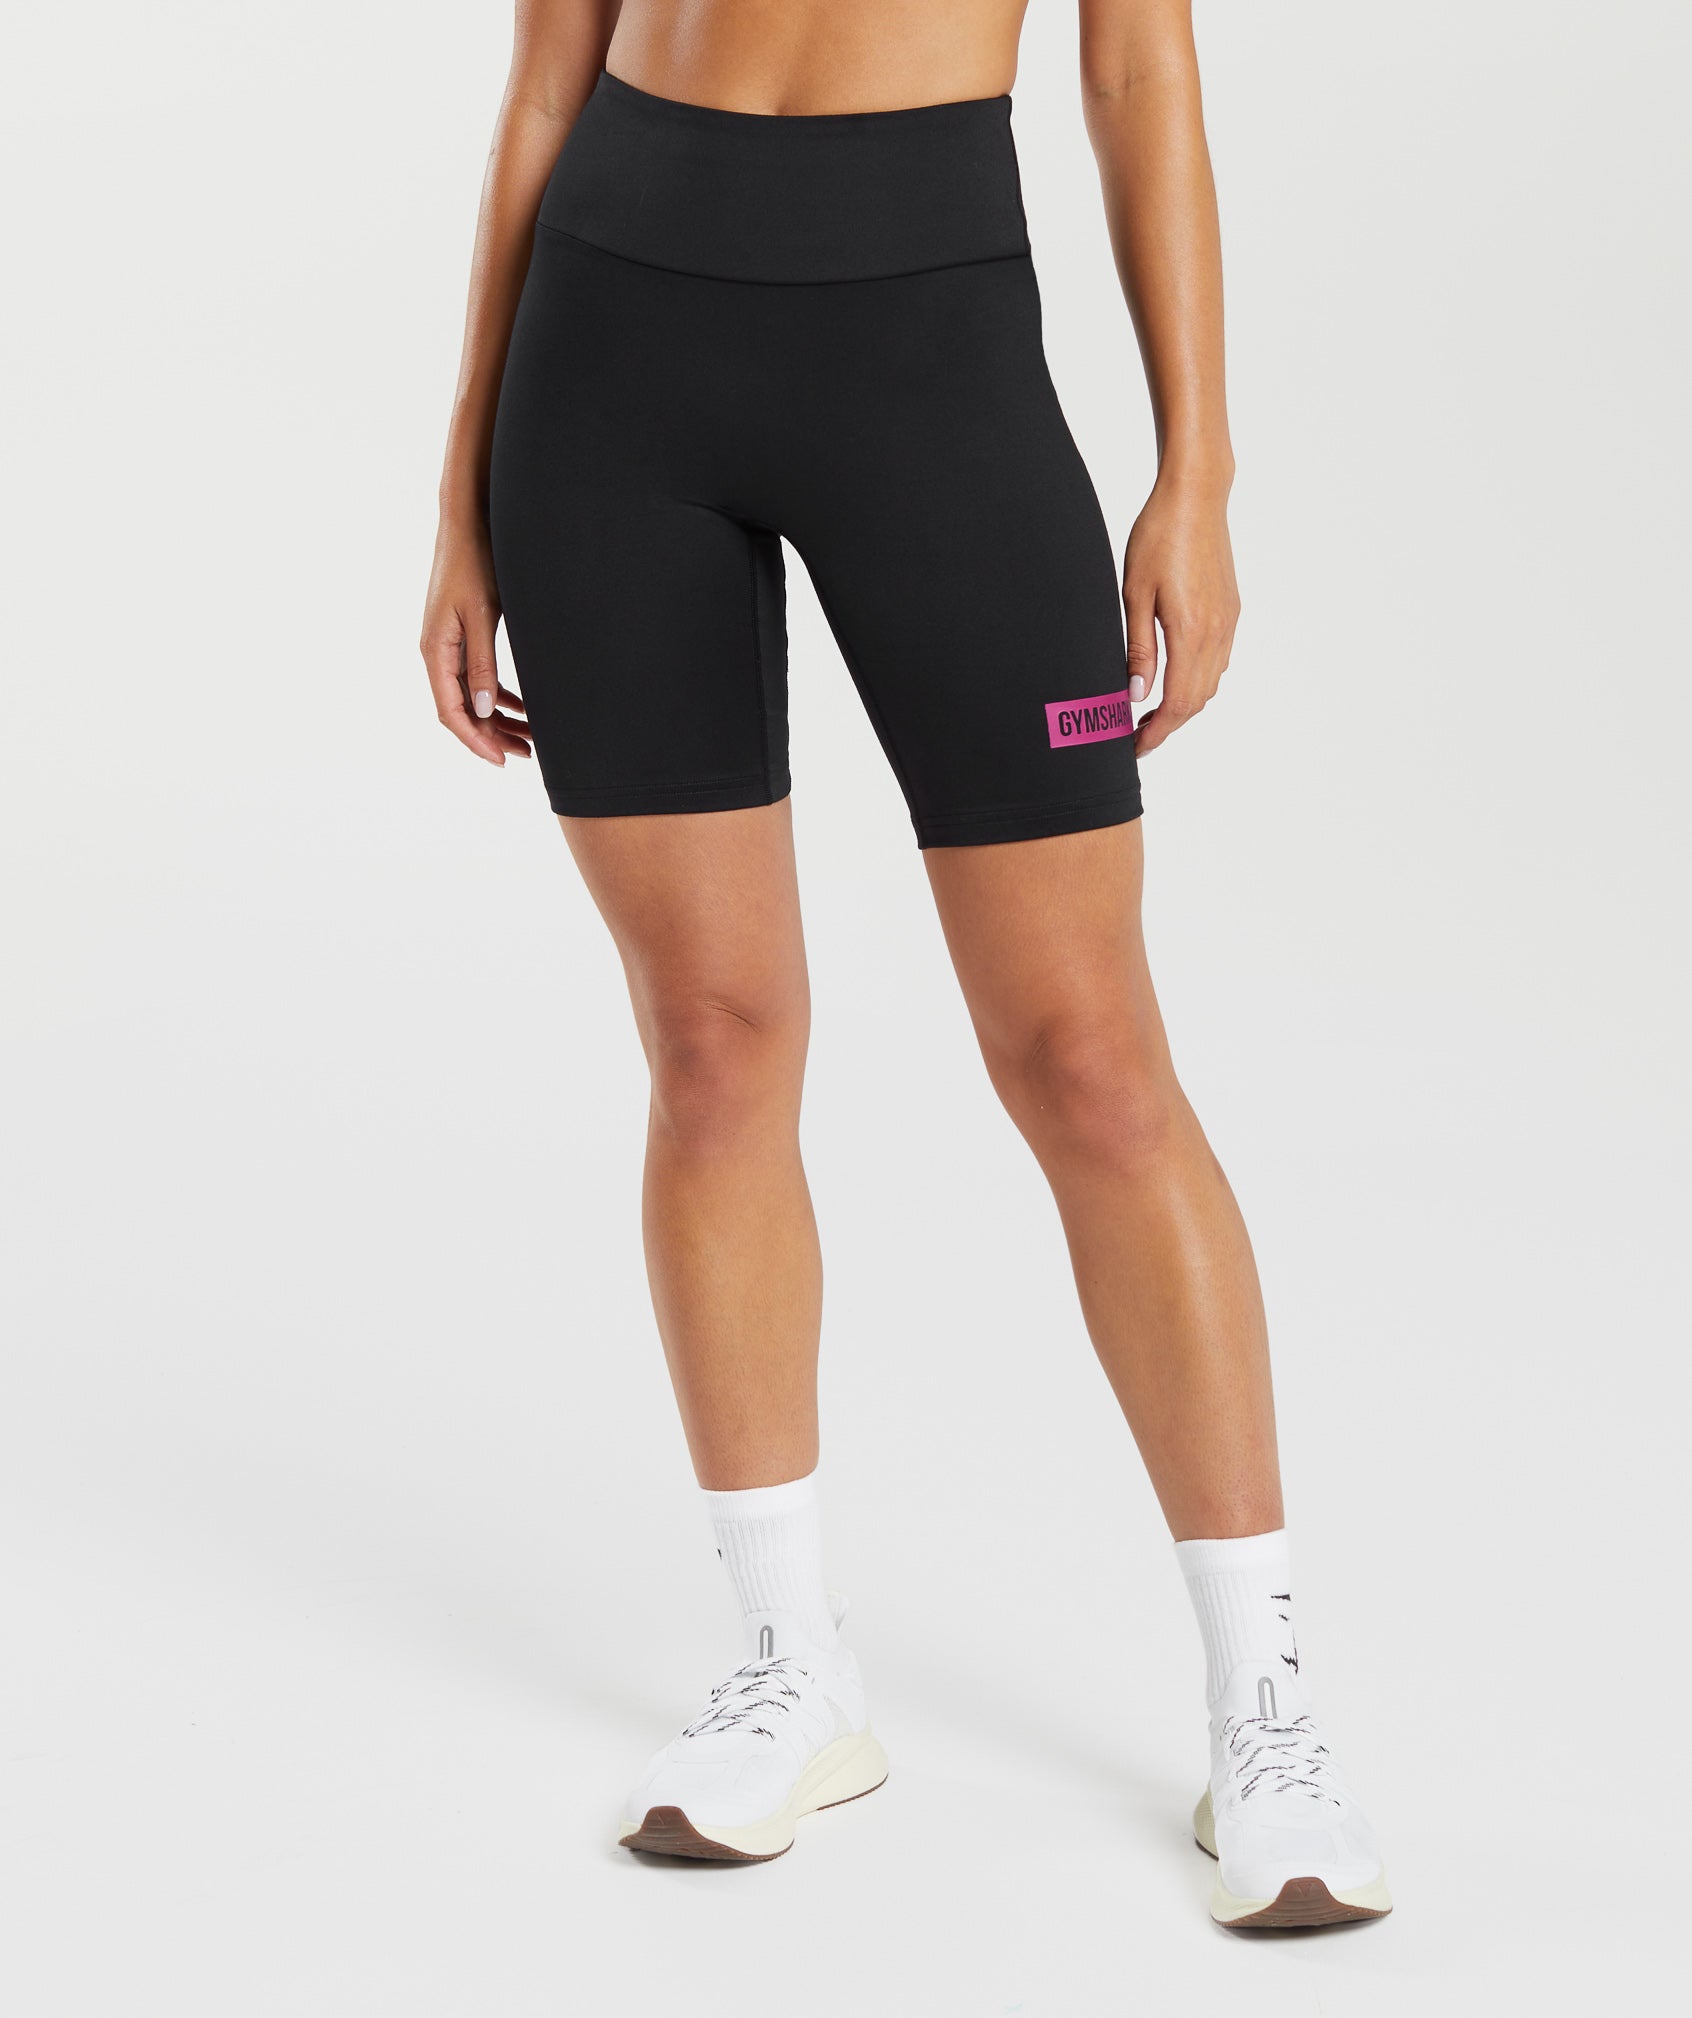 Biker & Cycling Shorts for Women - Gymshark